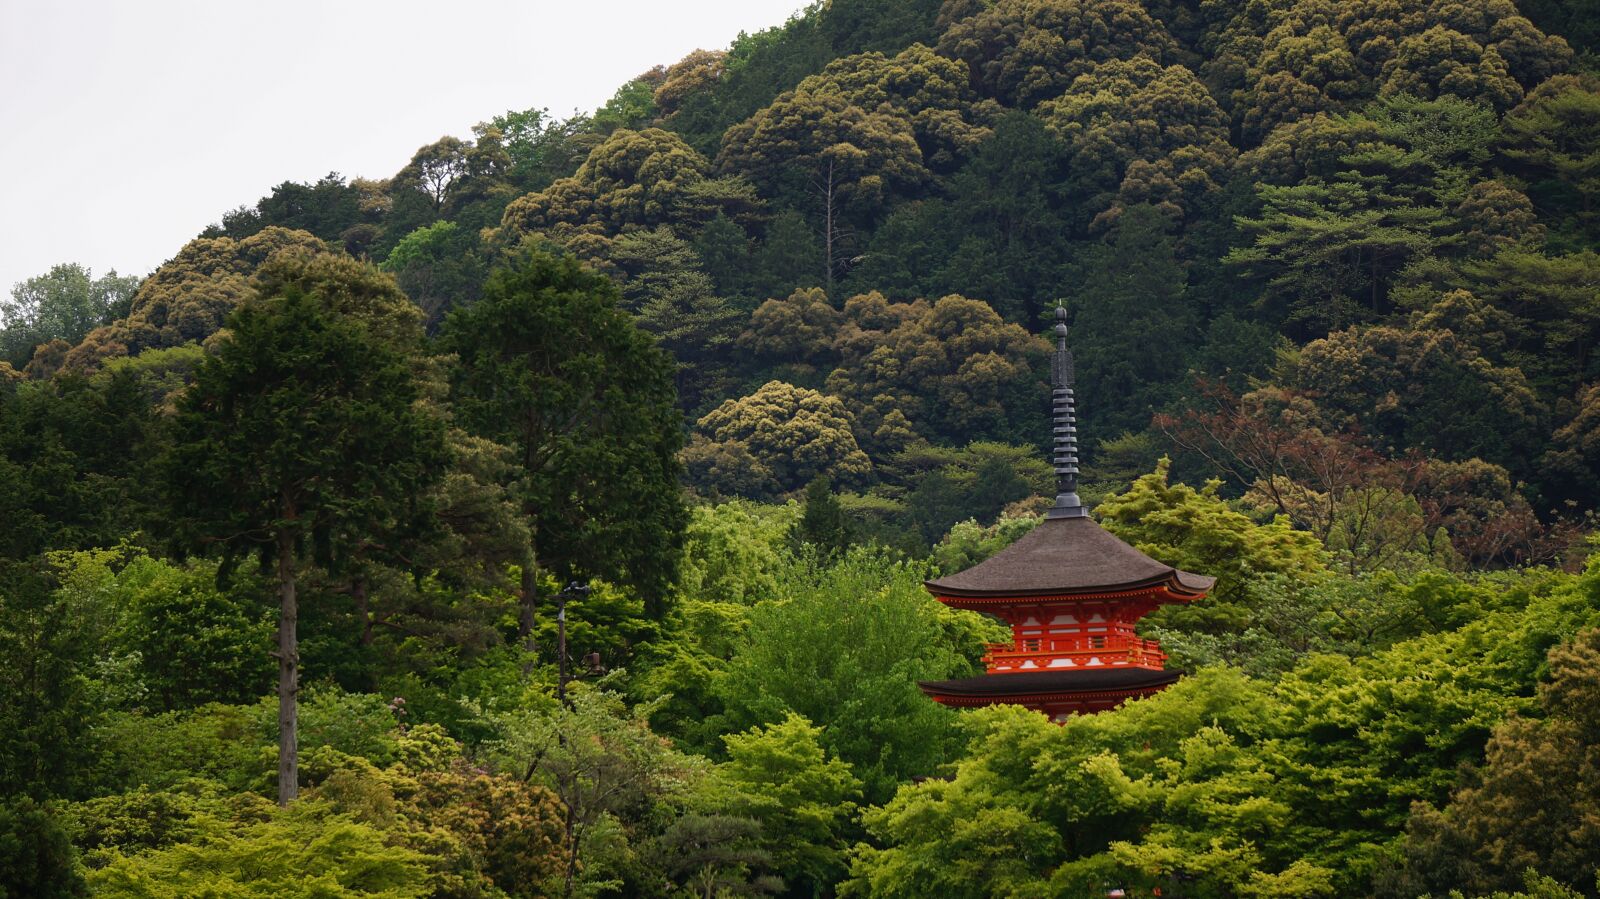 Sony Alpha NEX-5T + Sony E 55-210mm F4.5-6.3 OSS sample photo. Kyoto, the scenery, temple photography